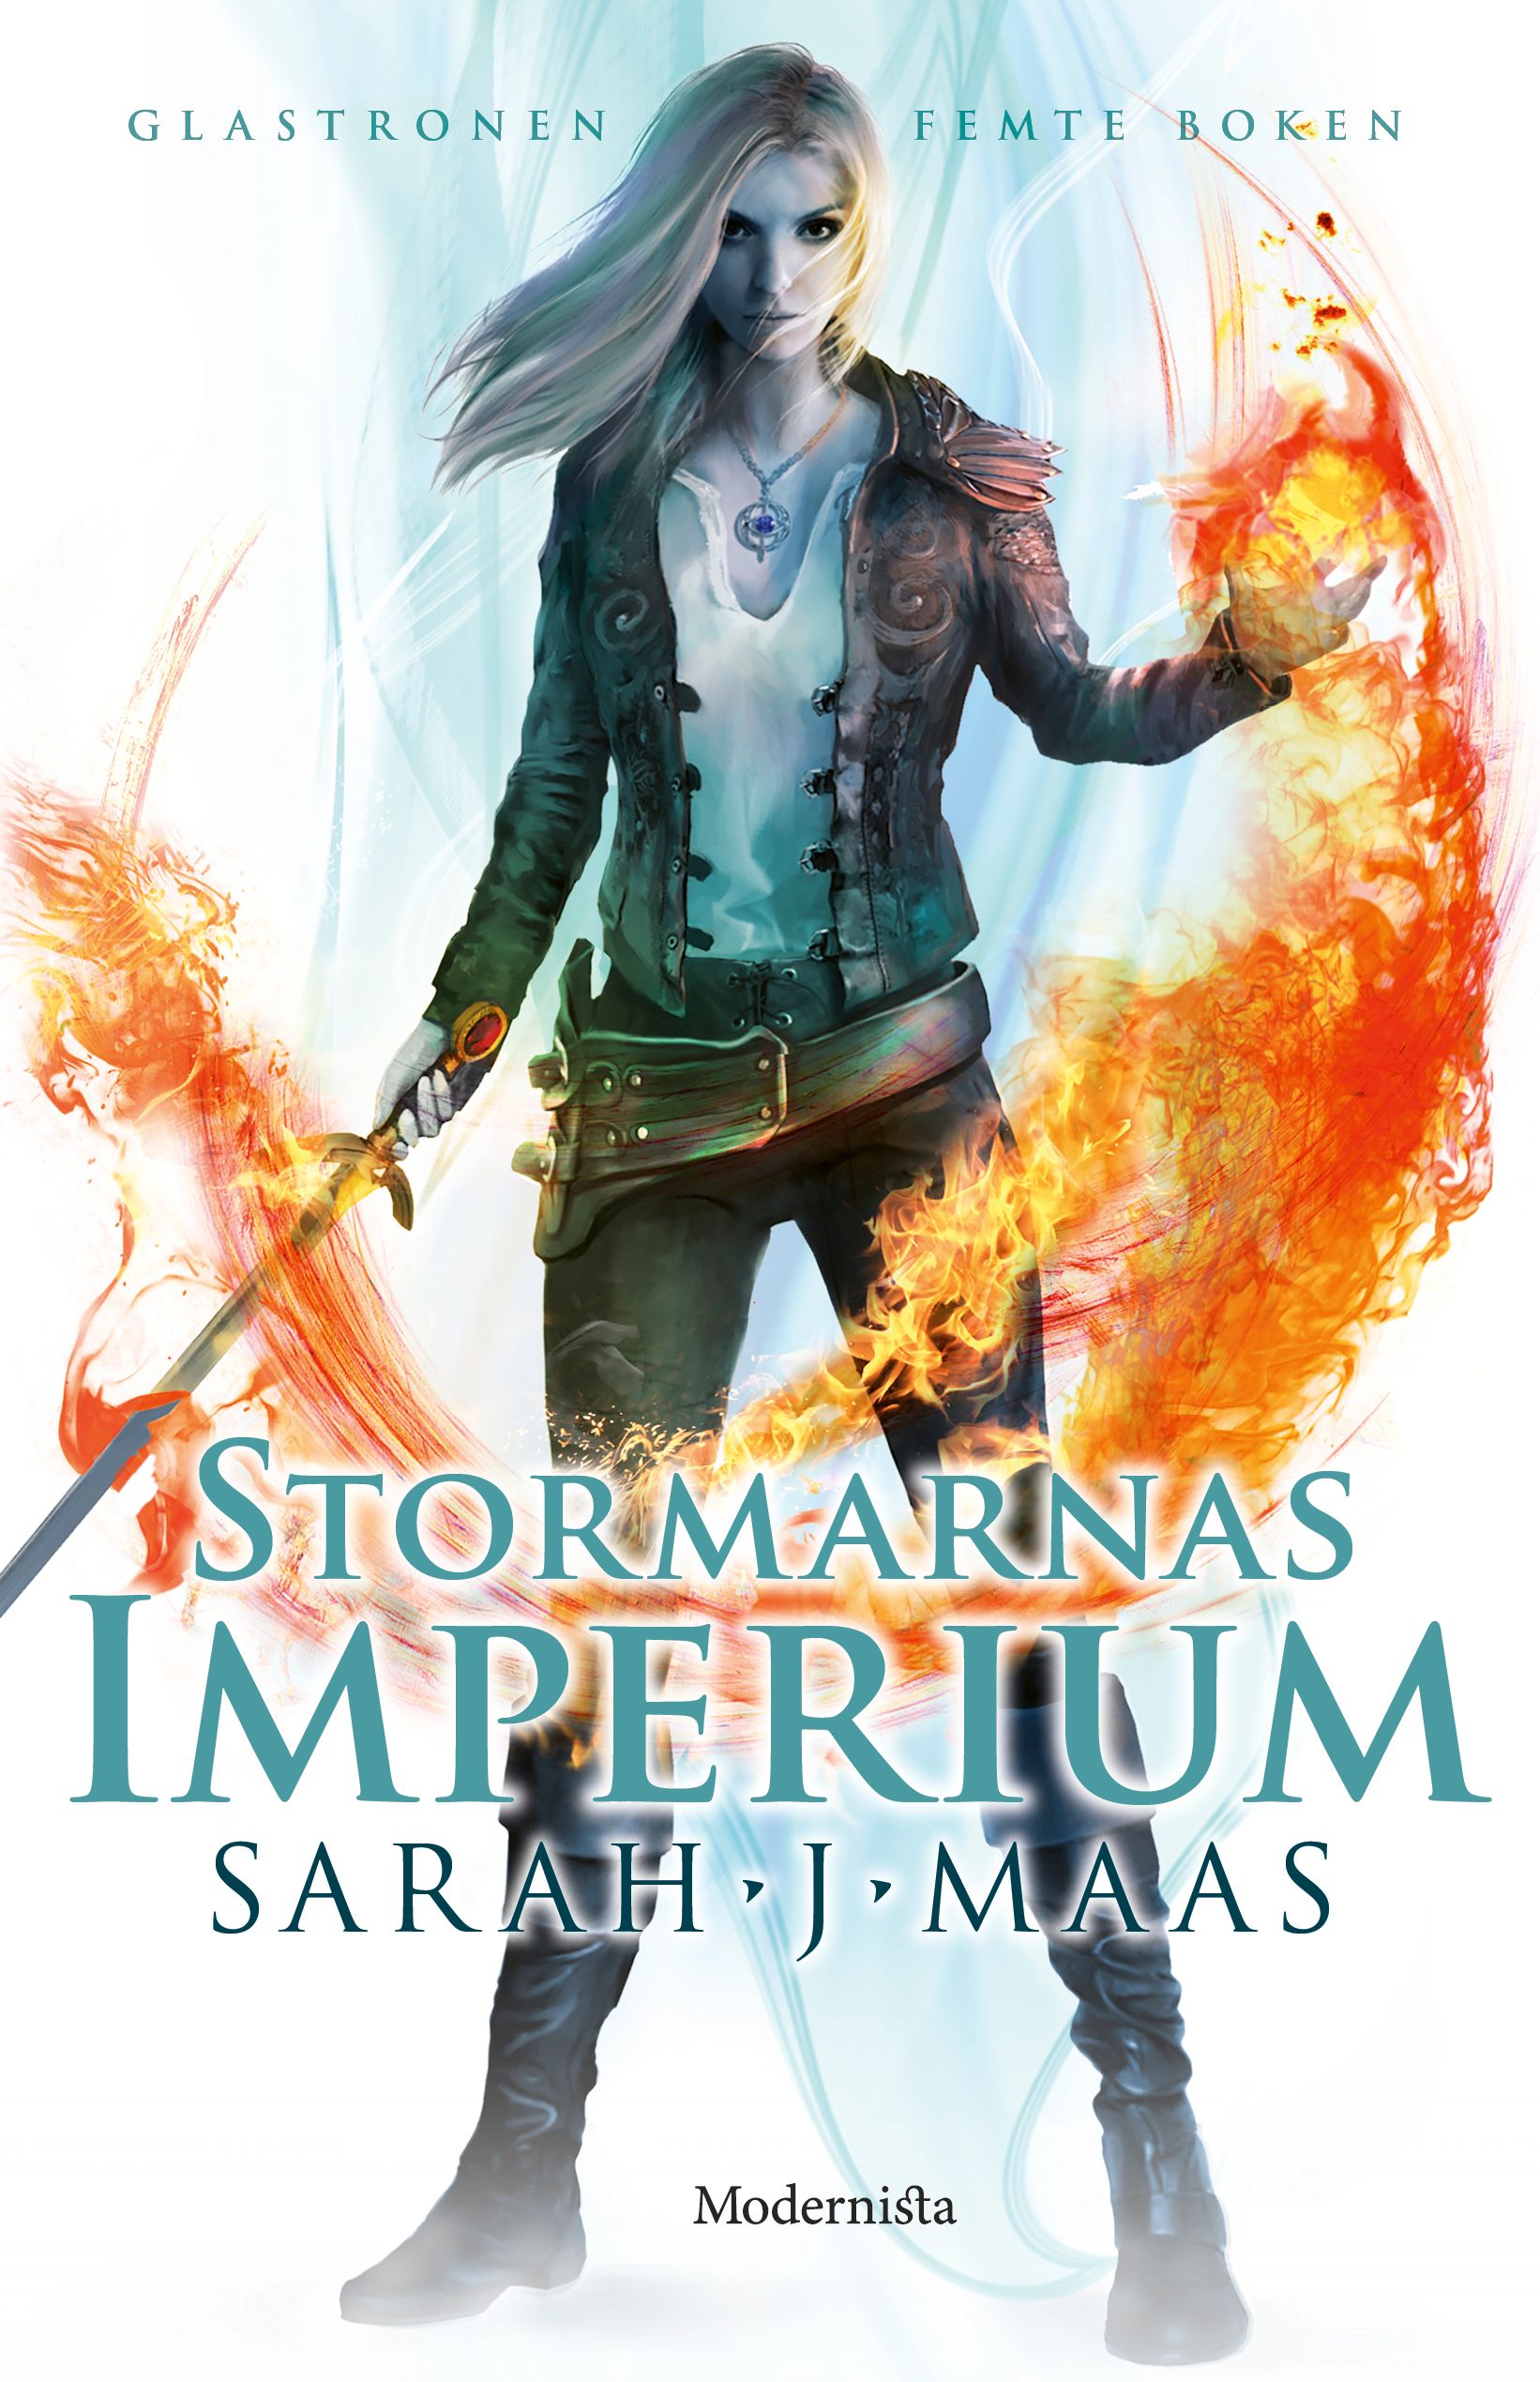 Stormarnas imperium (Femte boken i Glastronen-serien), e-bok av Sarah J. Maas